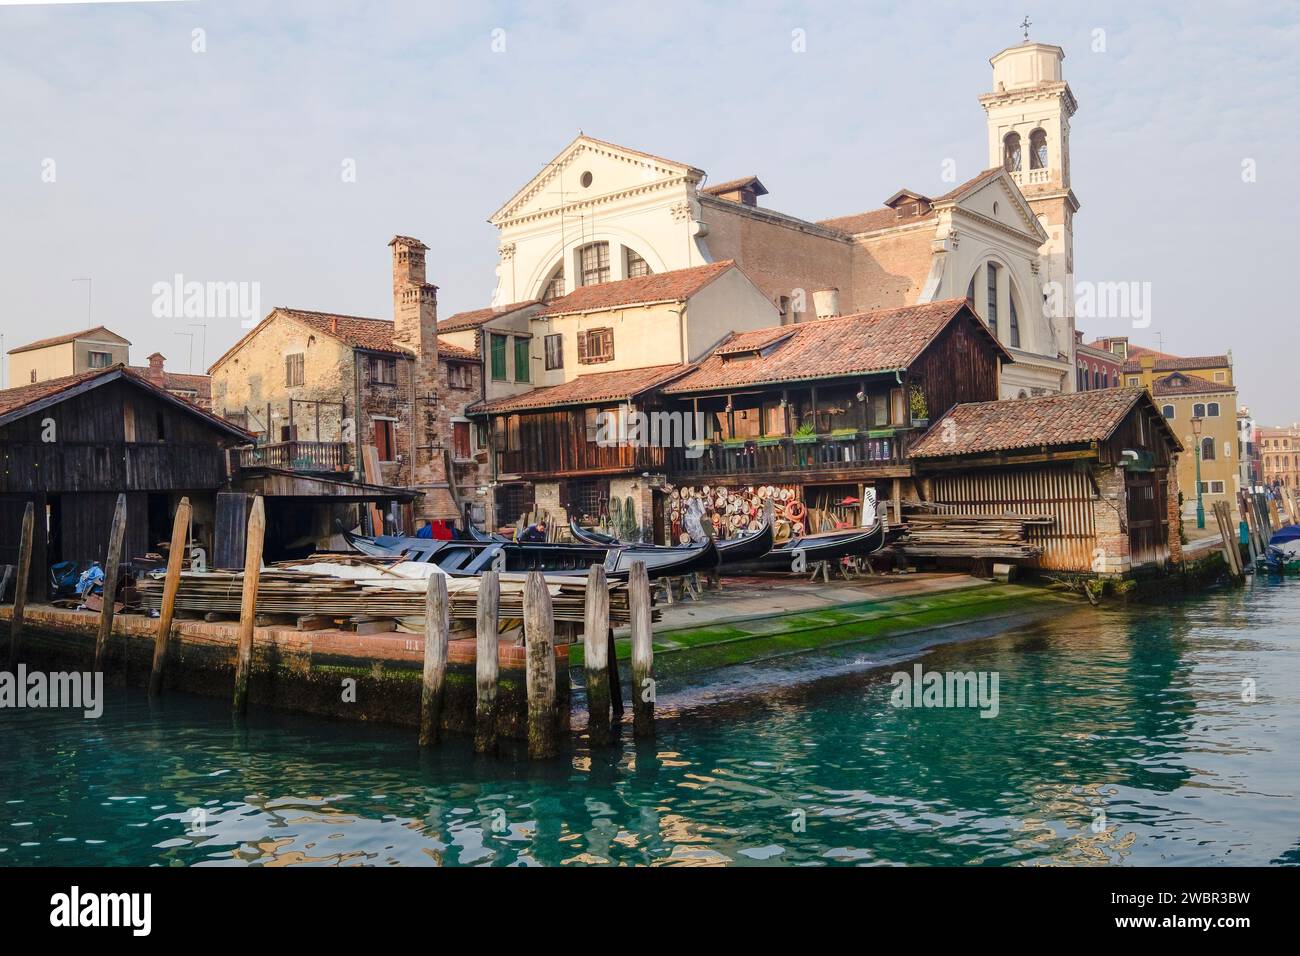 Le chantier naval Gondola (Squero San Tovaso) où les bateaux sont fabriqués et réparés, Venise, Italie Banque D'Images